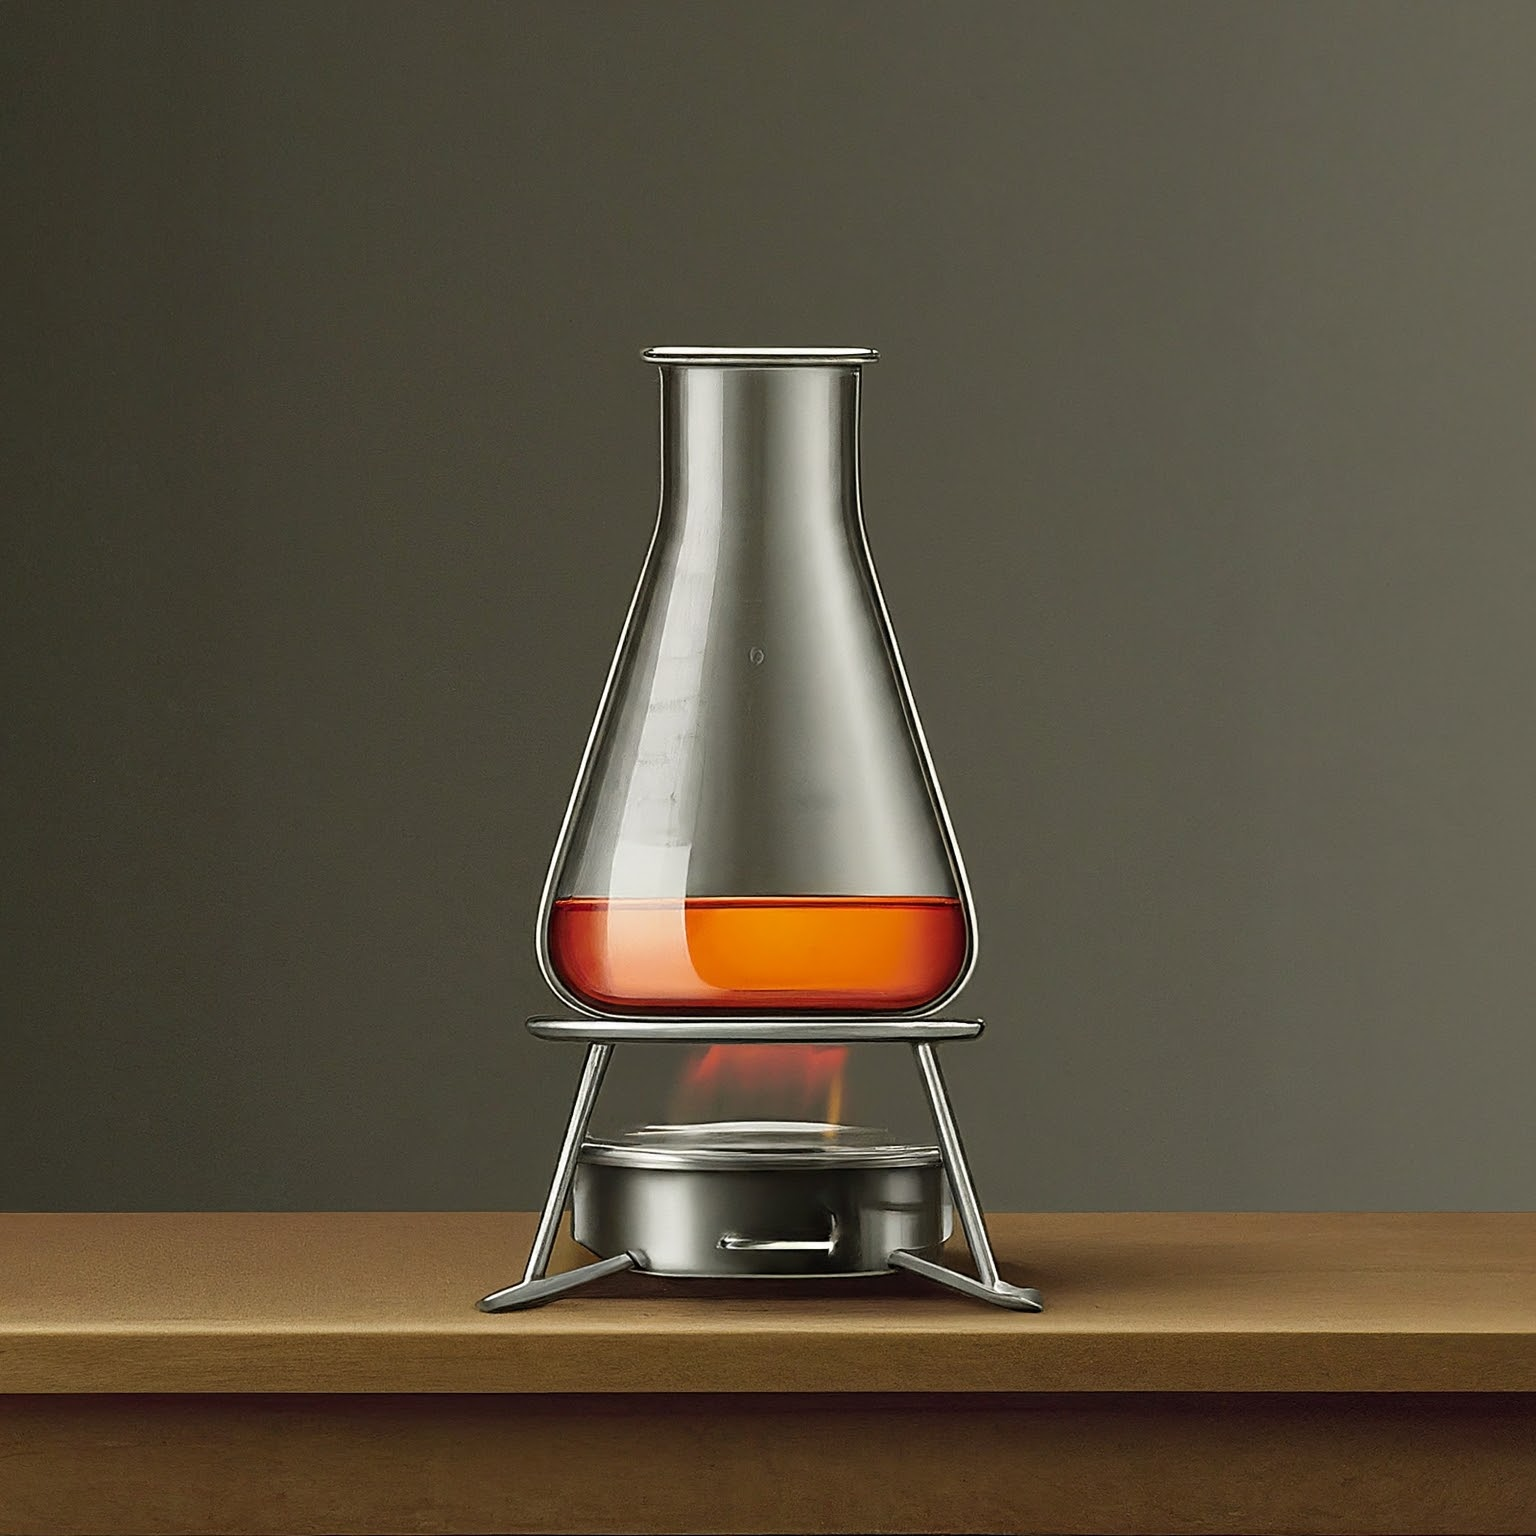 Illustration of flat-bottomed beaker for heating liquids